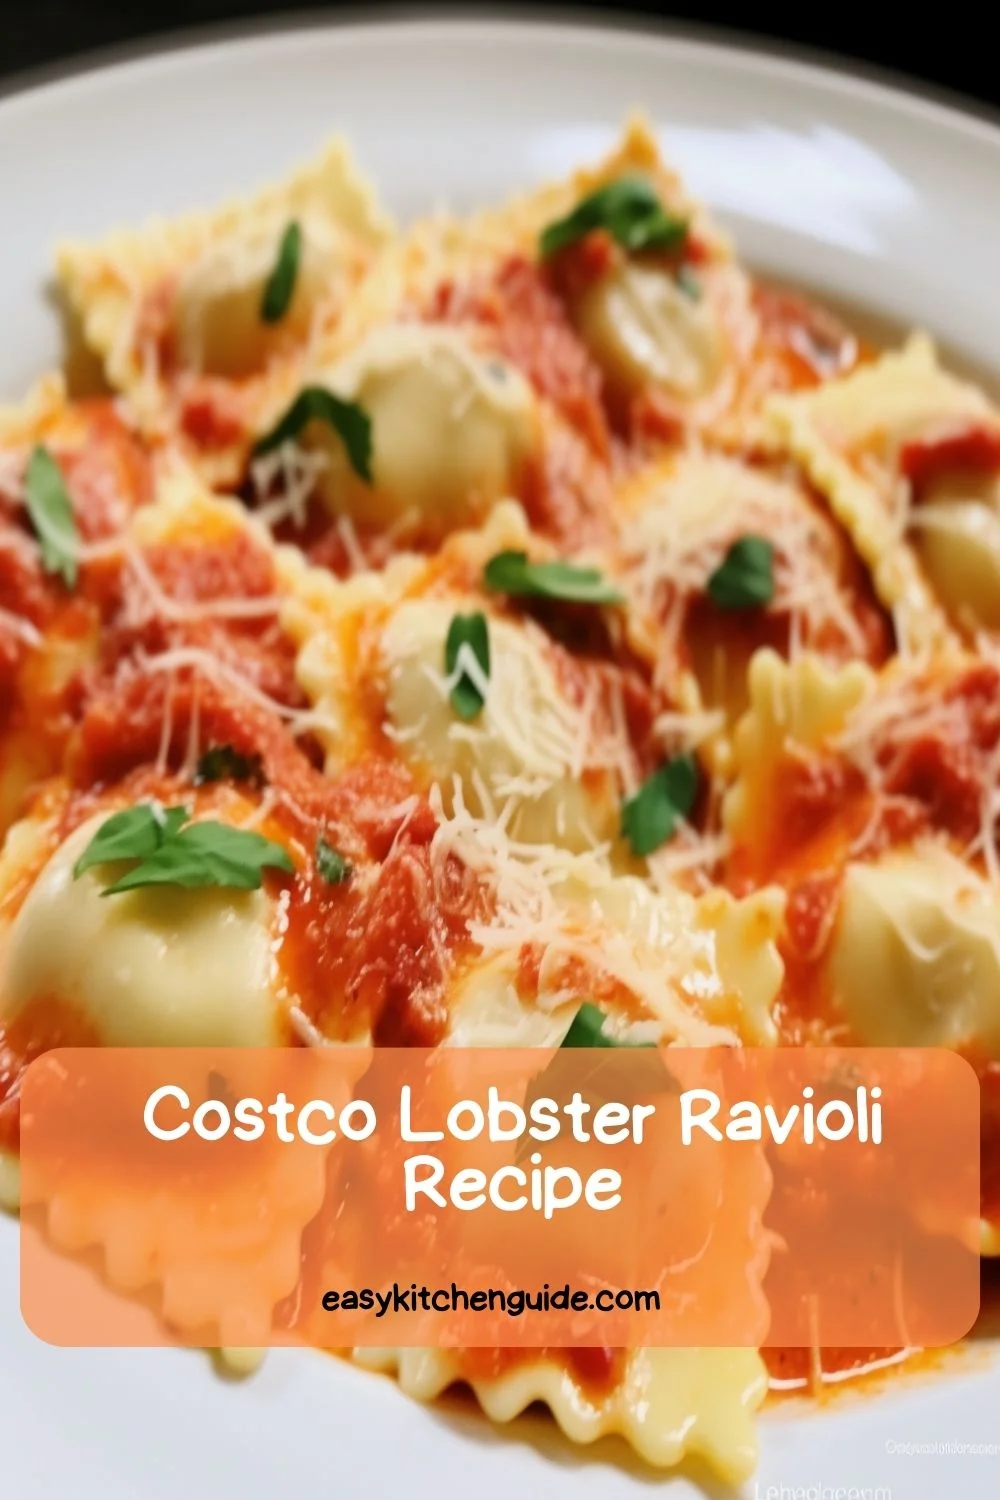 Costco Lobster Ravioli Recipe